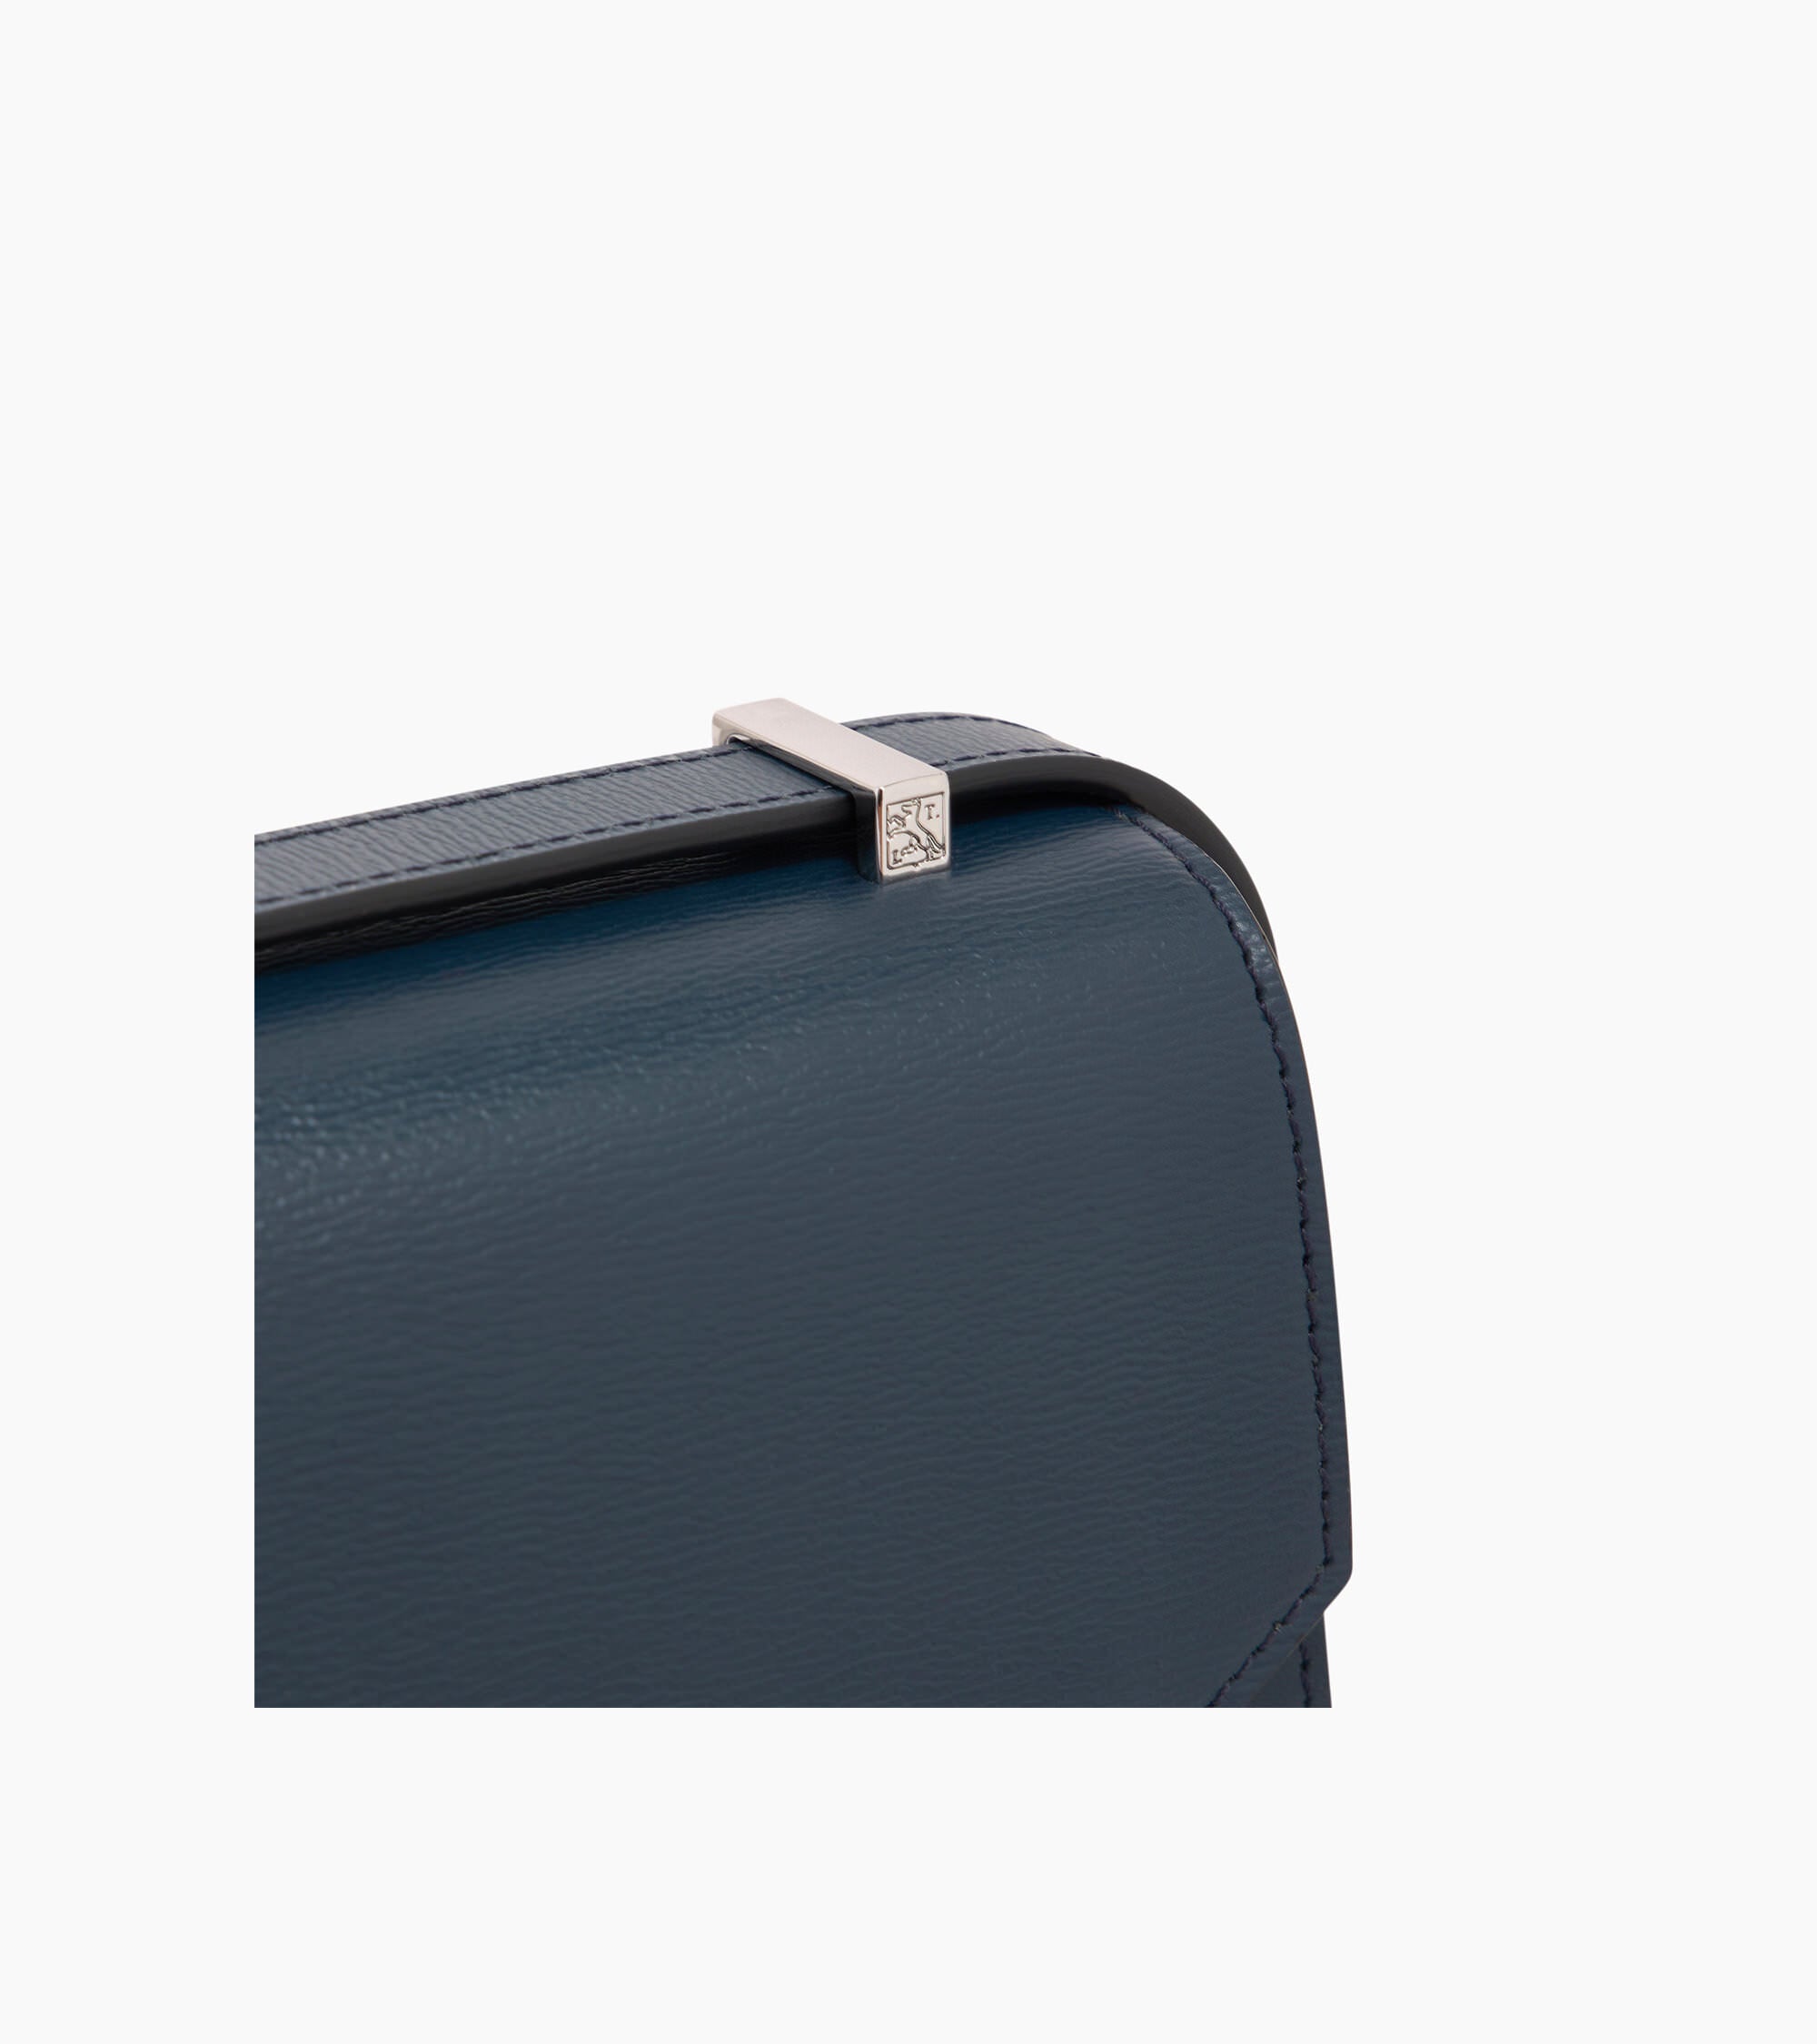 Naya mini shoulder bag in cork effect leather